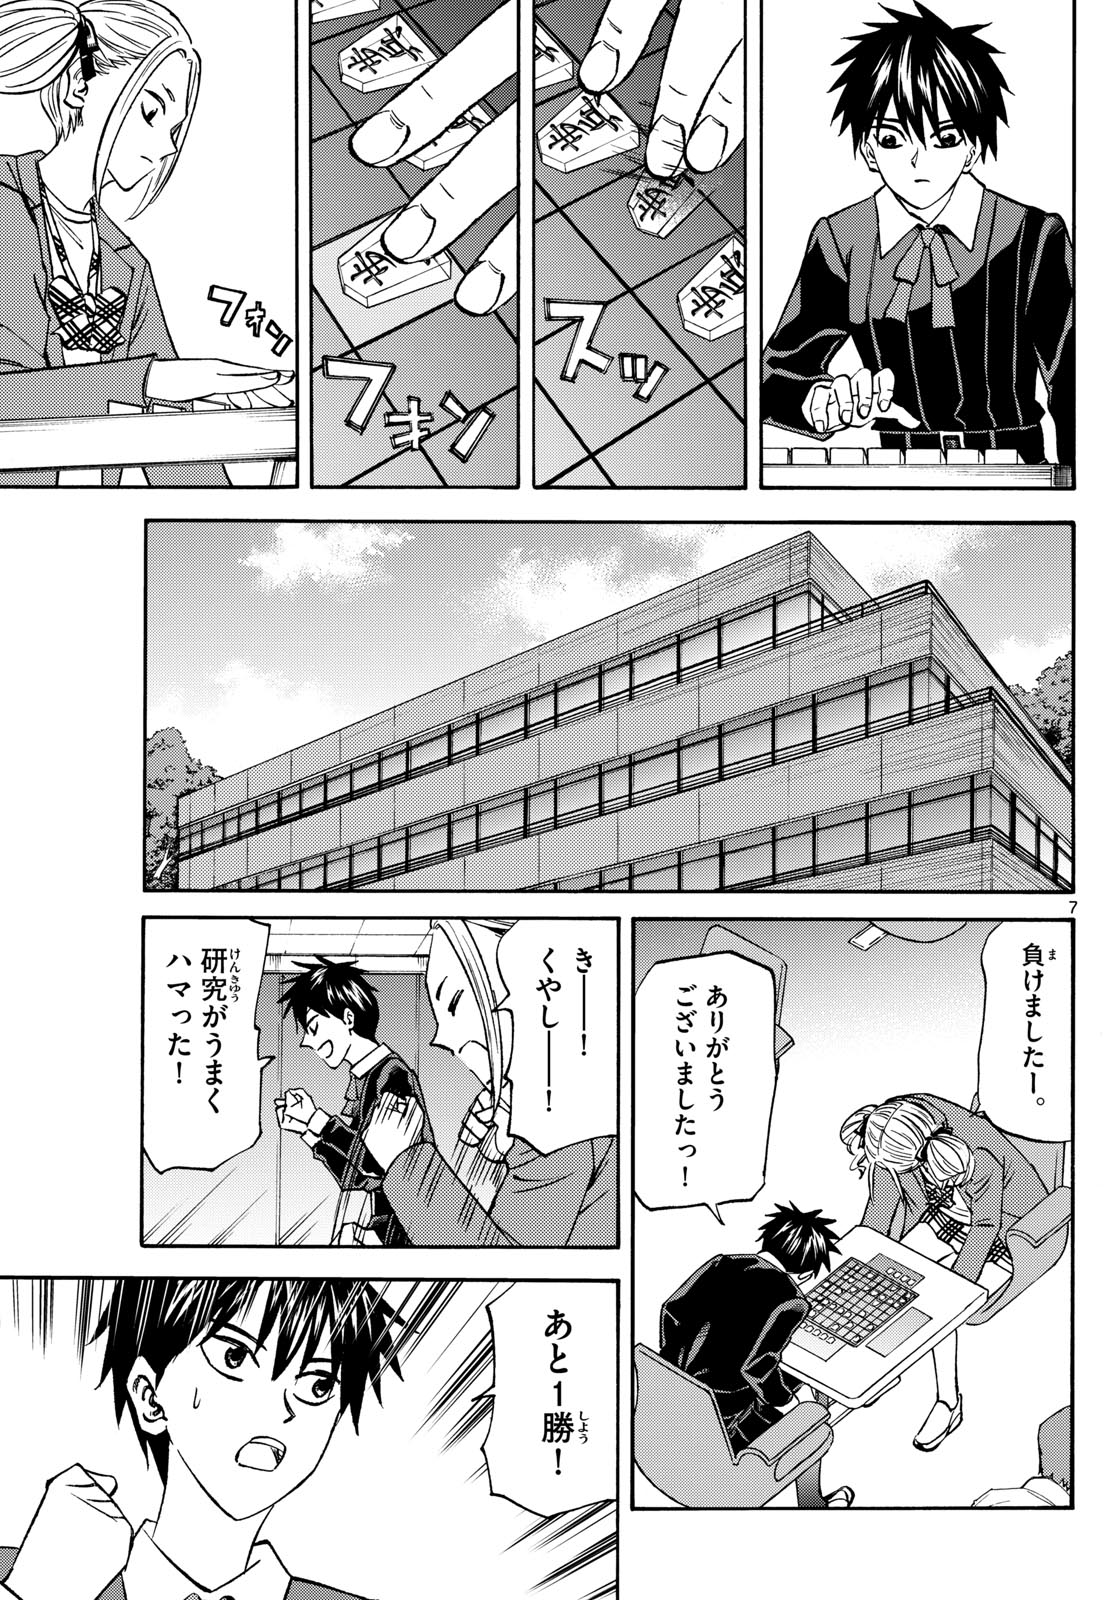 Tatsu to Ichigo - Chapter 181 - Page 7